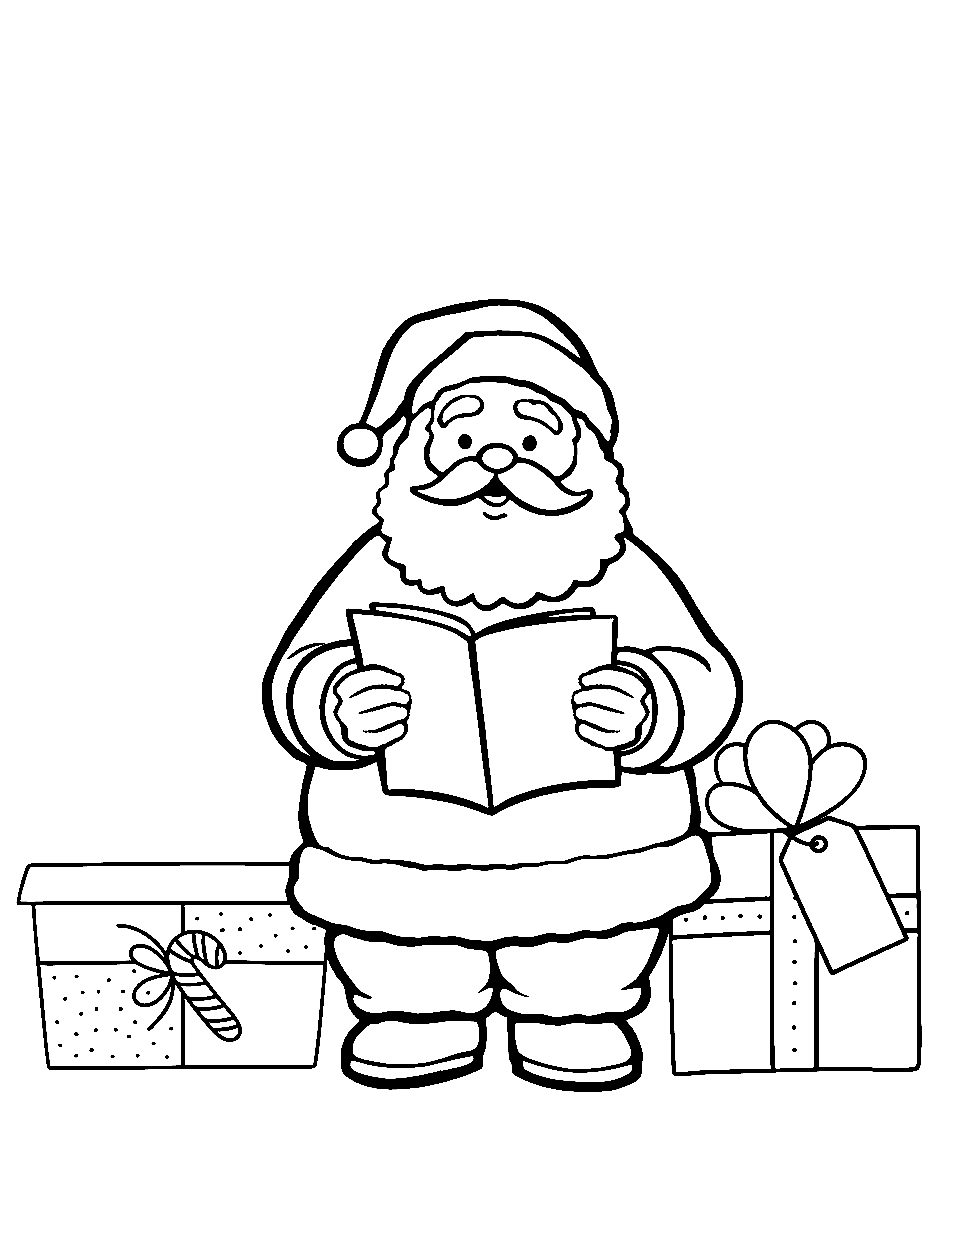 Santa coloring pages free printable sheets